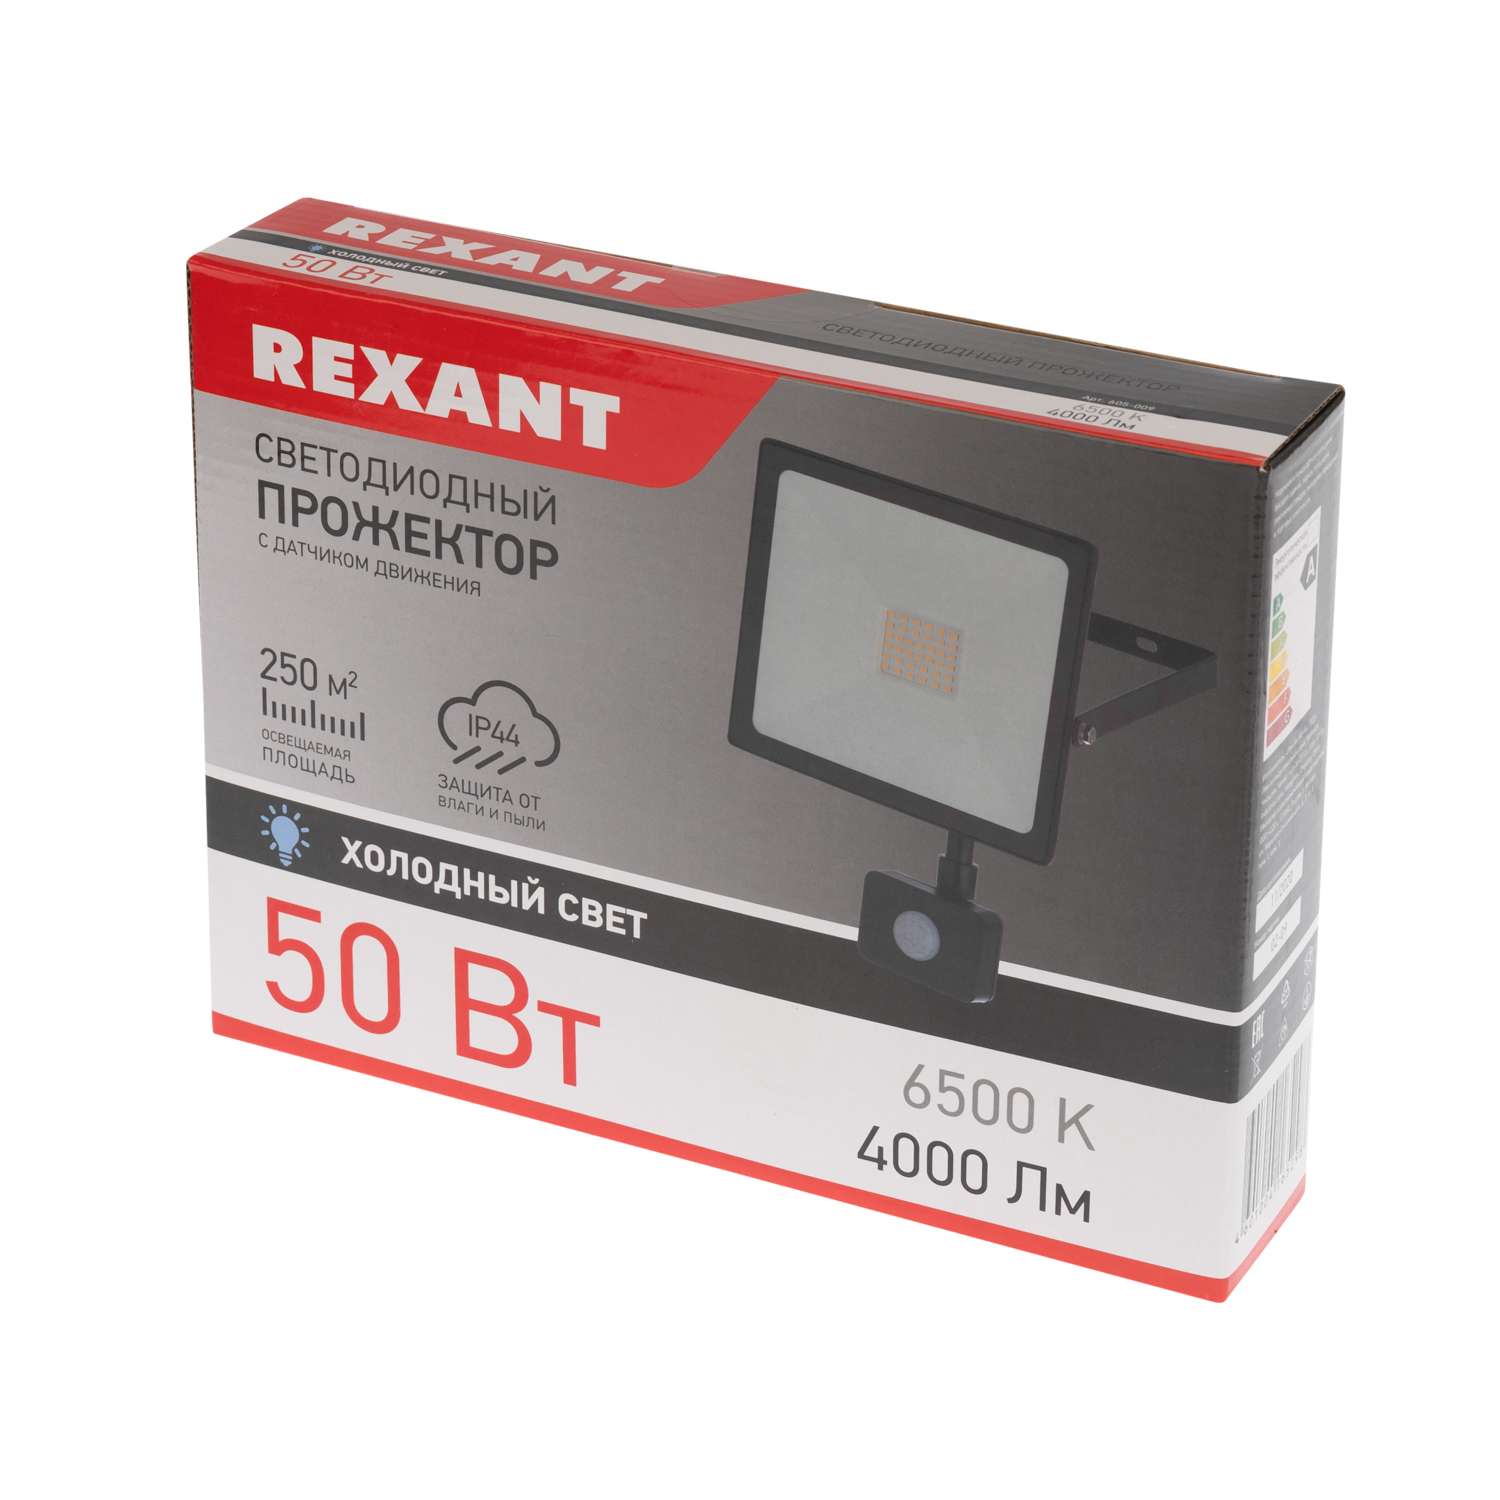 Прожектор REXANT 50 Вт светодиодный 4000Лм 6500К холодный свет с датчиком движения - фото 4